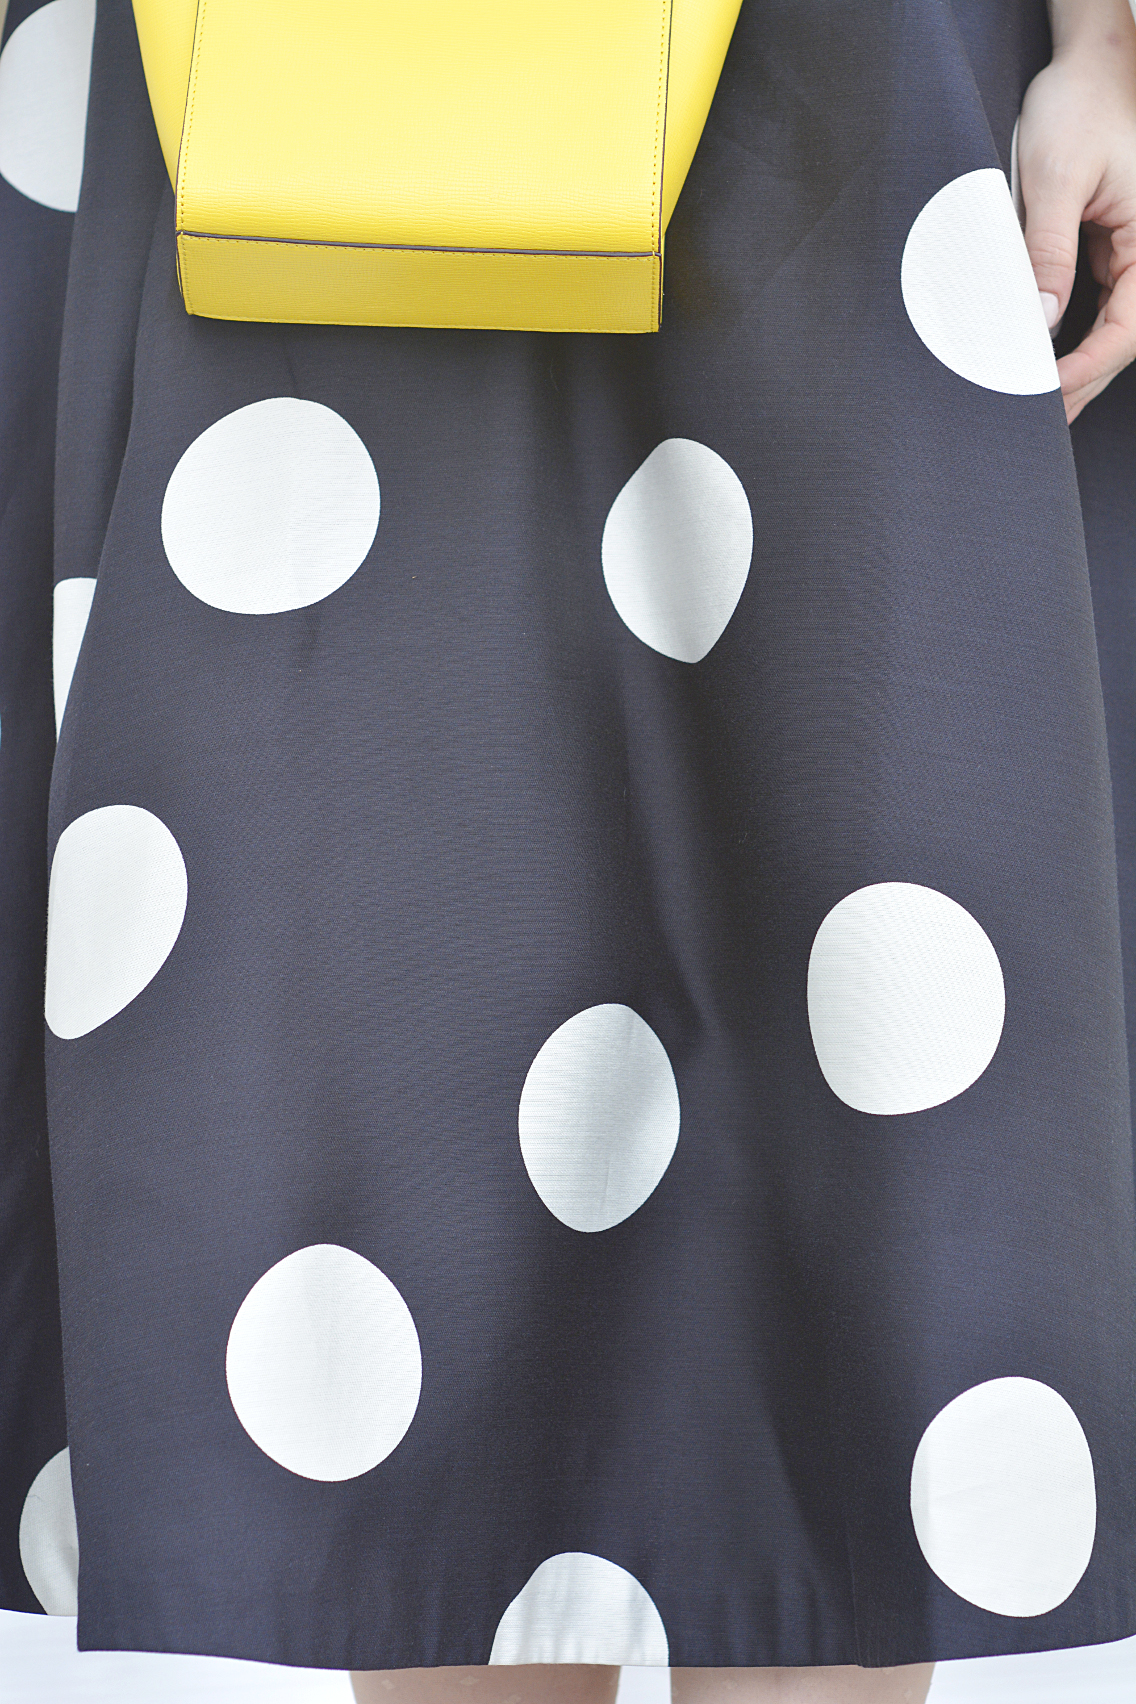 LK Bennett Polka Dot Midi Dress Spring 2015 37